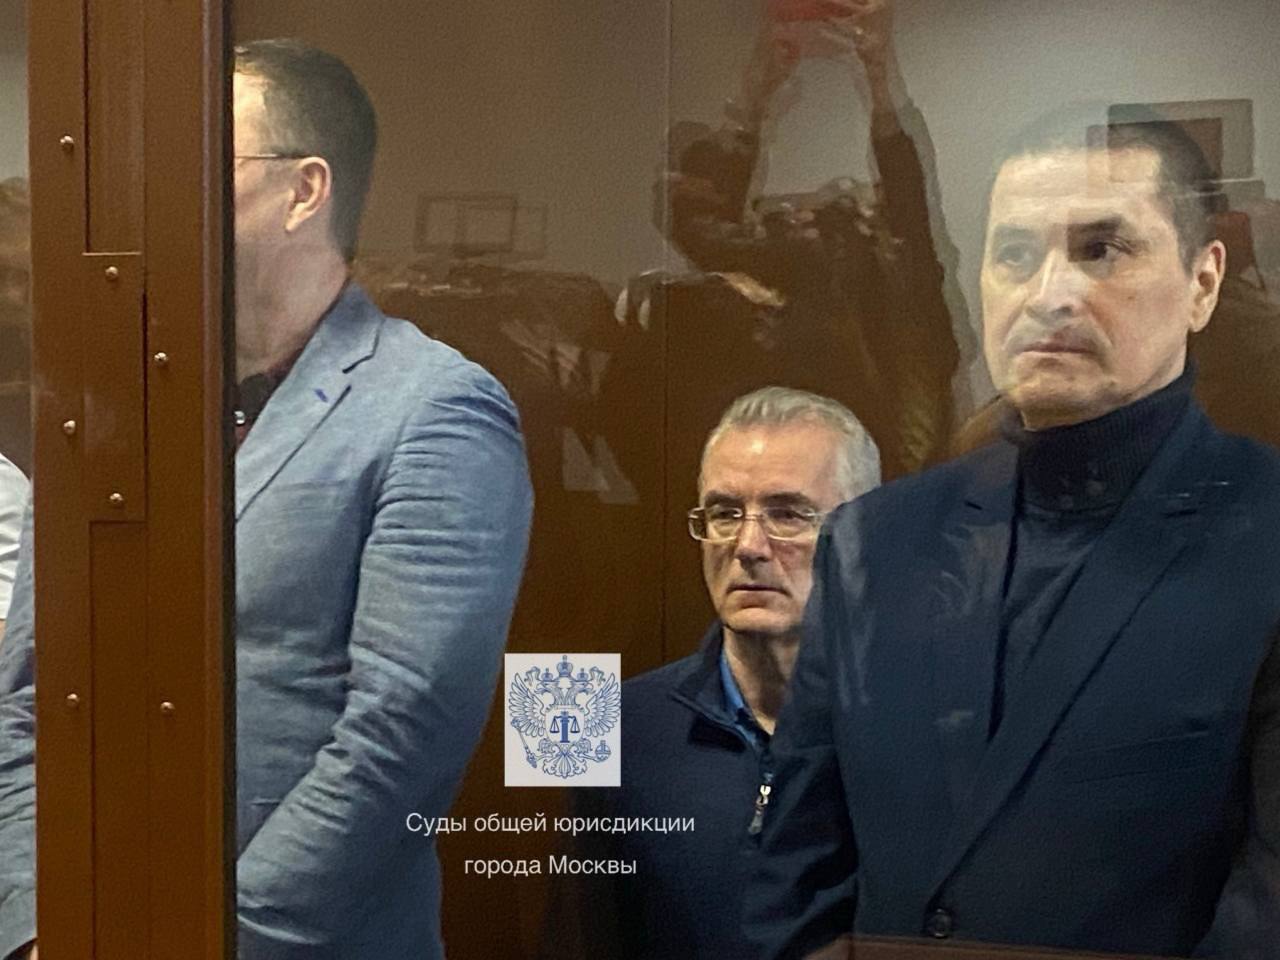 Иван Белозерцев приговорен к 12 годам колонии строгого режима